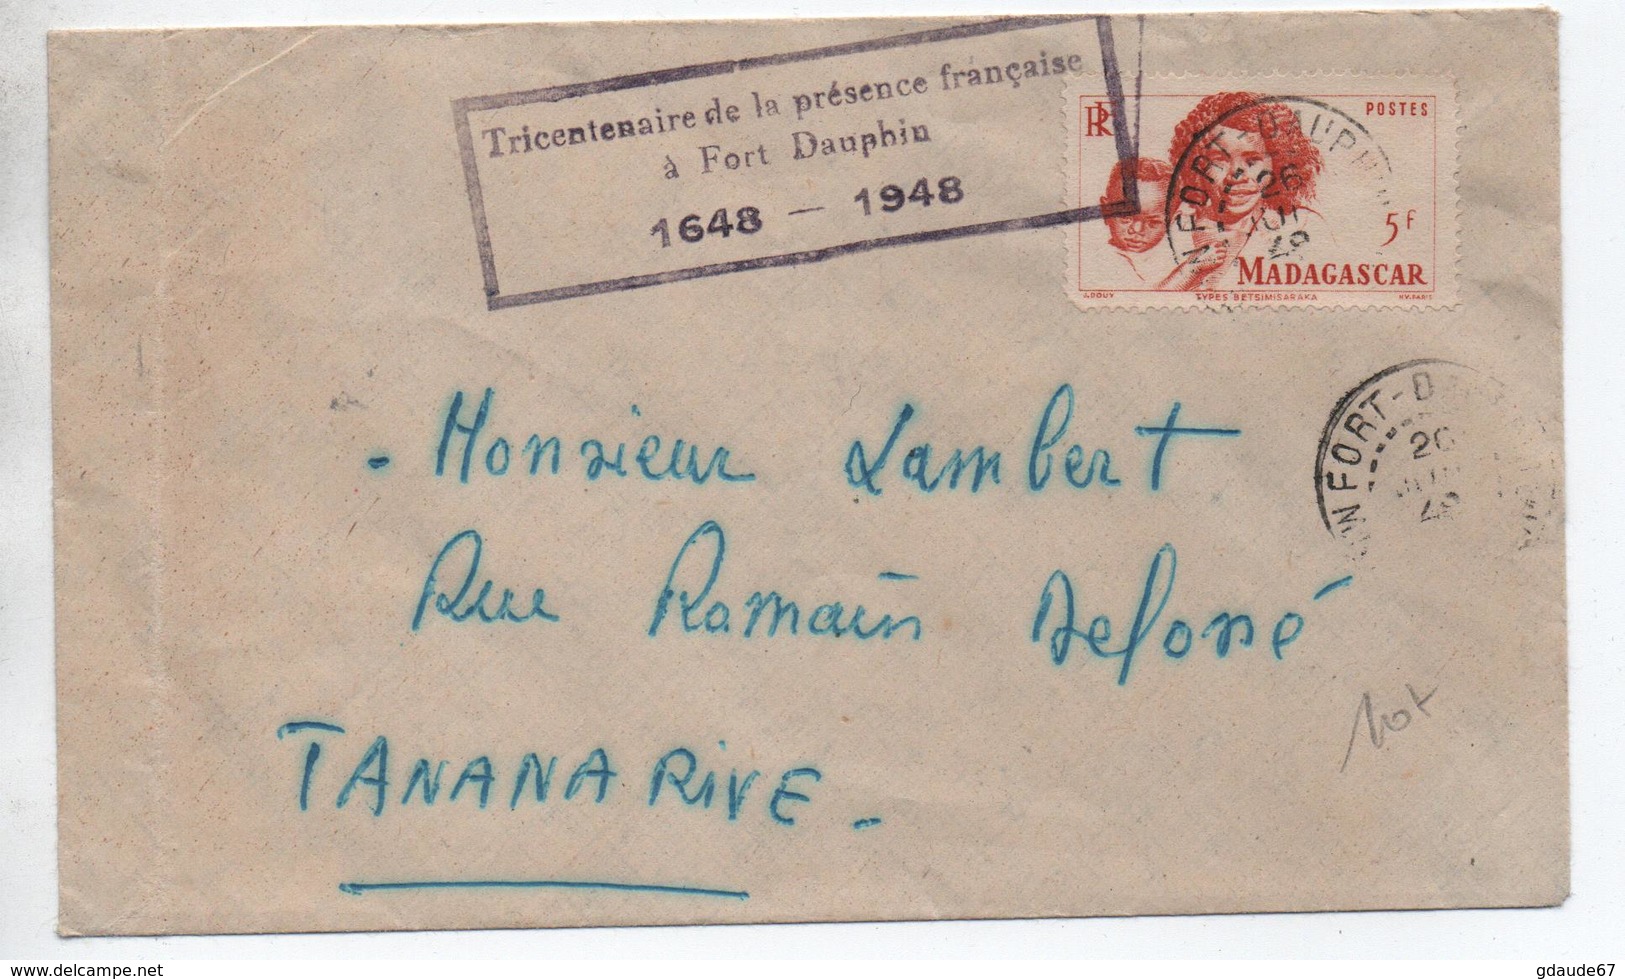 1948 - ENVELOPPE De FORT DAUPHIN (MADAGASCAR) Avec CACHET "TRICENTENAIRE DE LA PRESENCE FRANCAISE A FORT DAUPHIN 1648" - Lettres & Documents